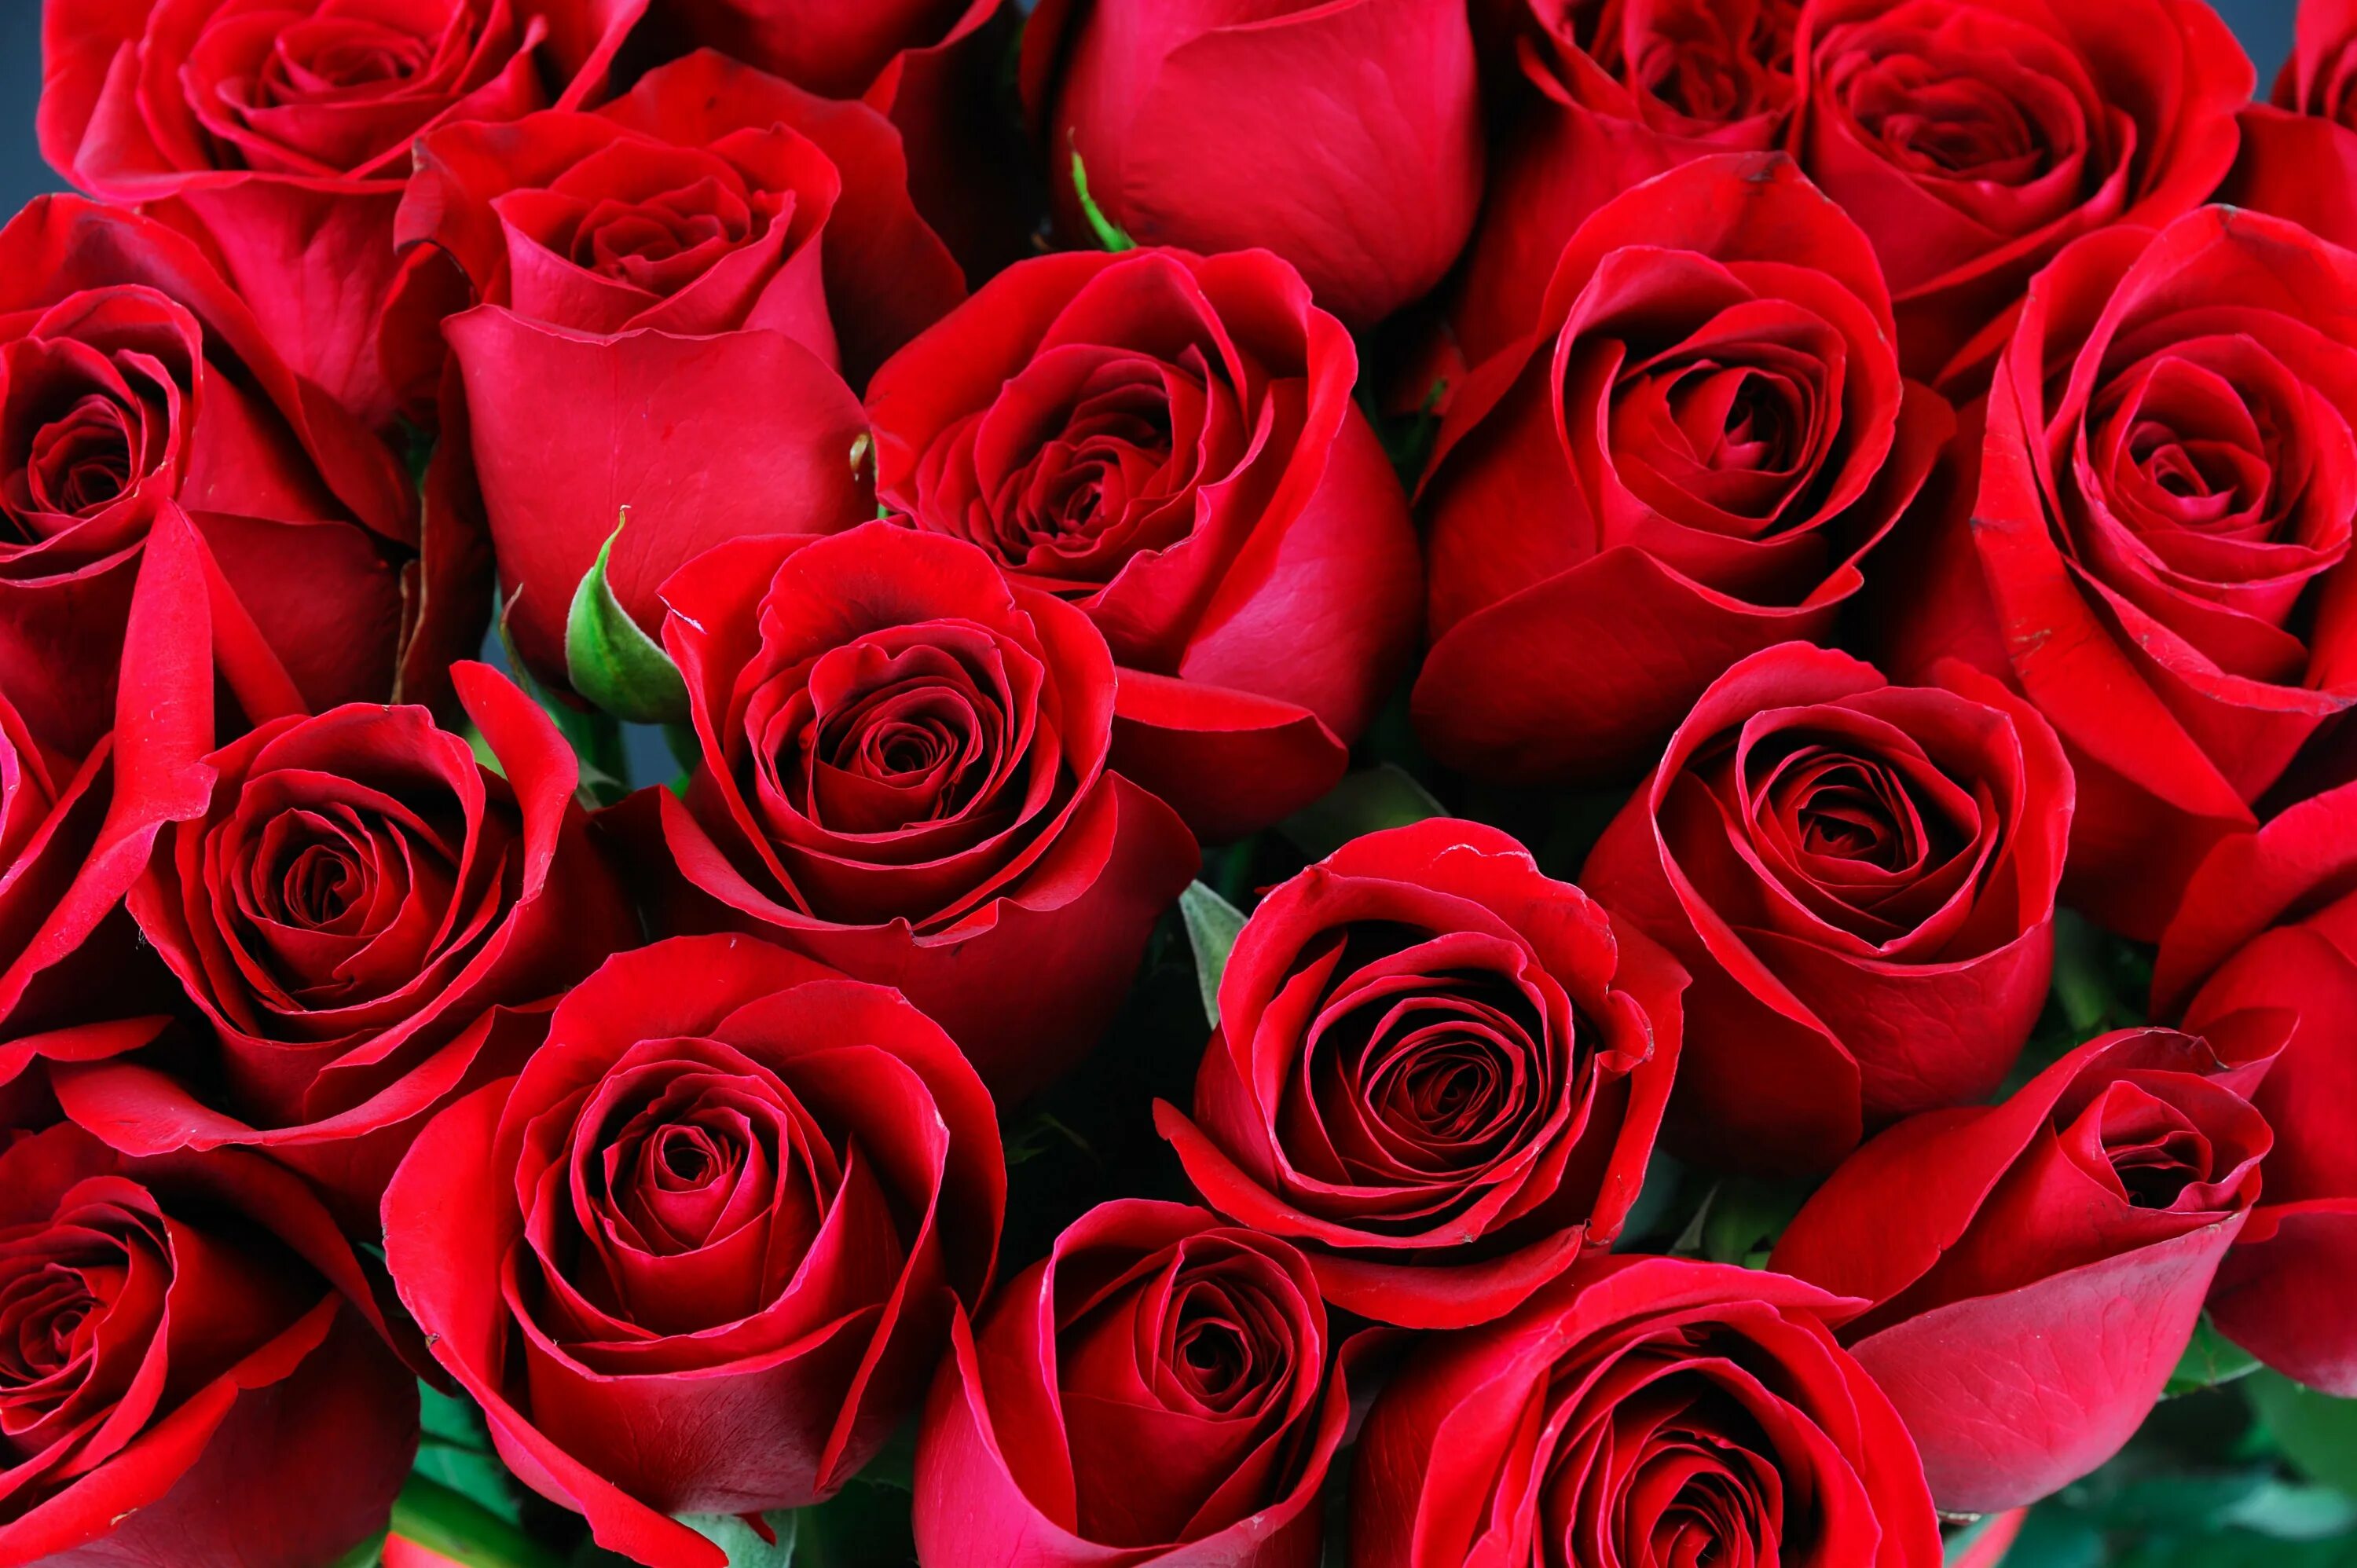 Фотки красивых роз. Красные розы. Шикарный букет алых роз. Красивый букет красных роз.